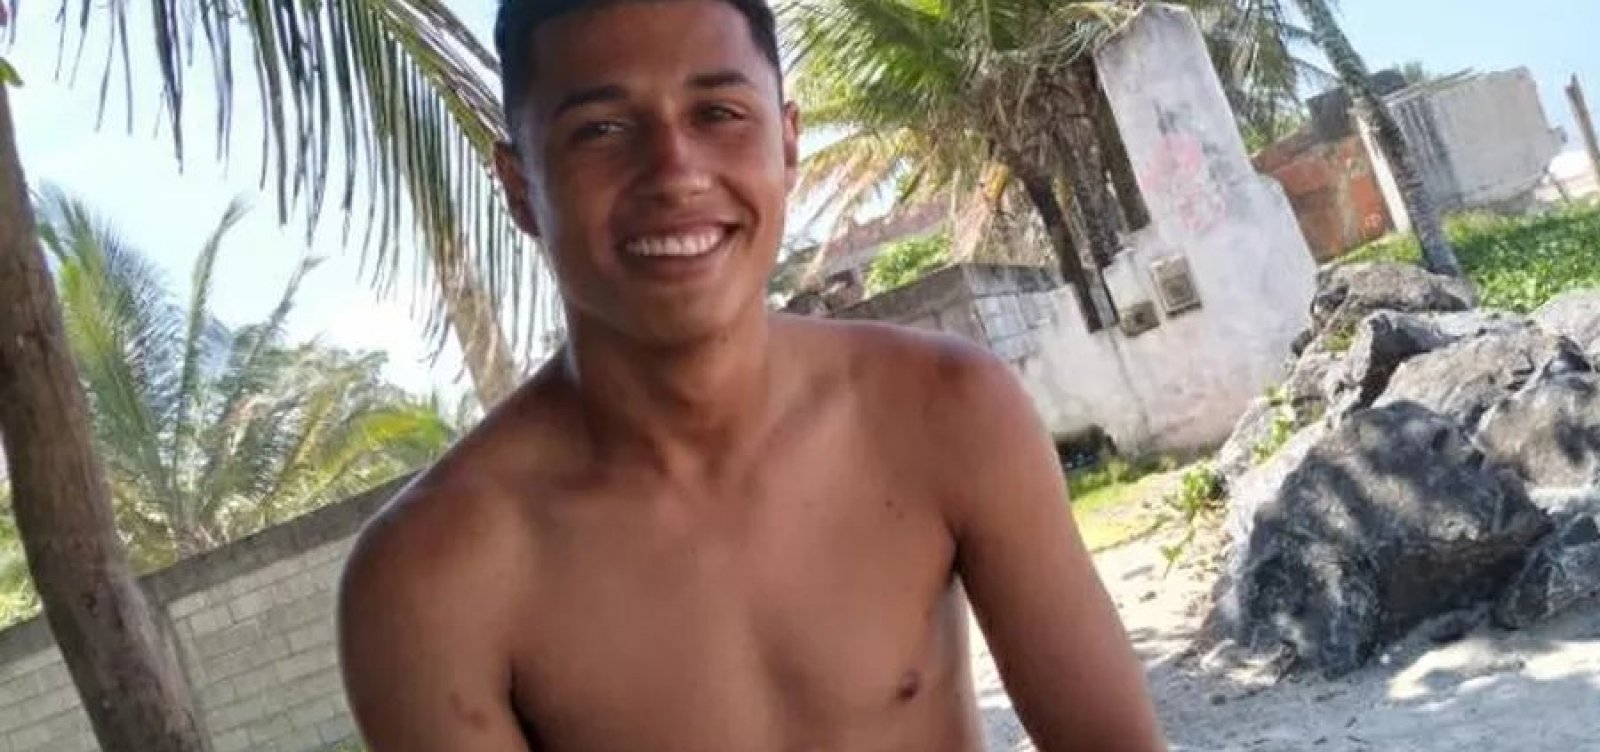 Jovem indígena é morto a tiros e tem corpo carbonizado após acampamento ser invadido no sul da Bahia 